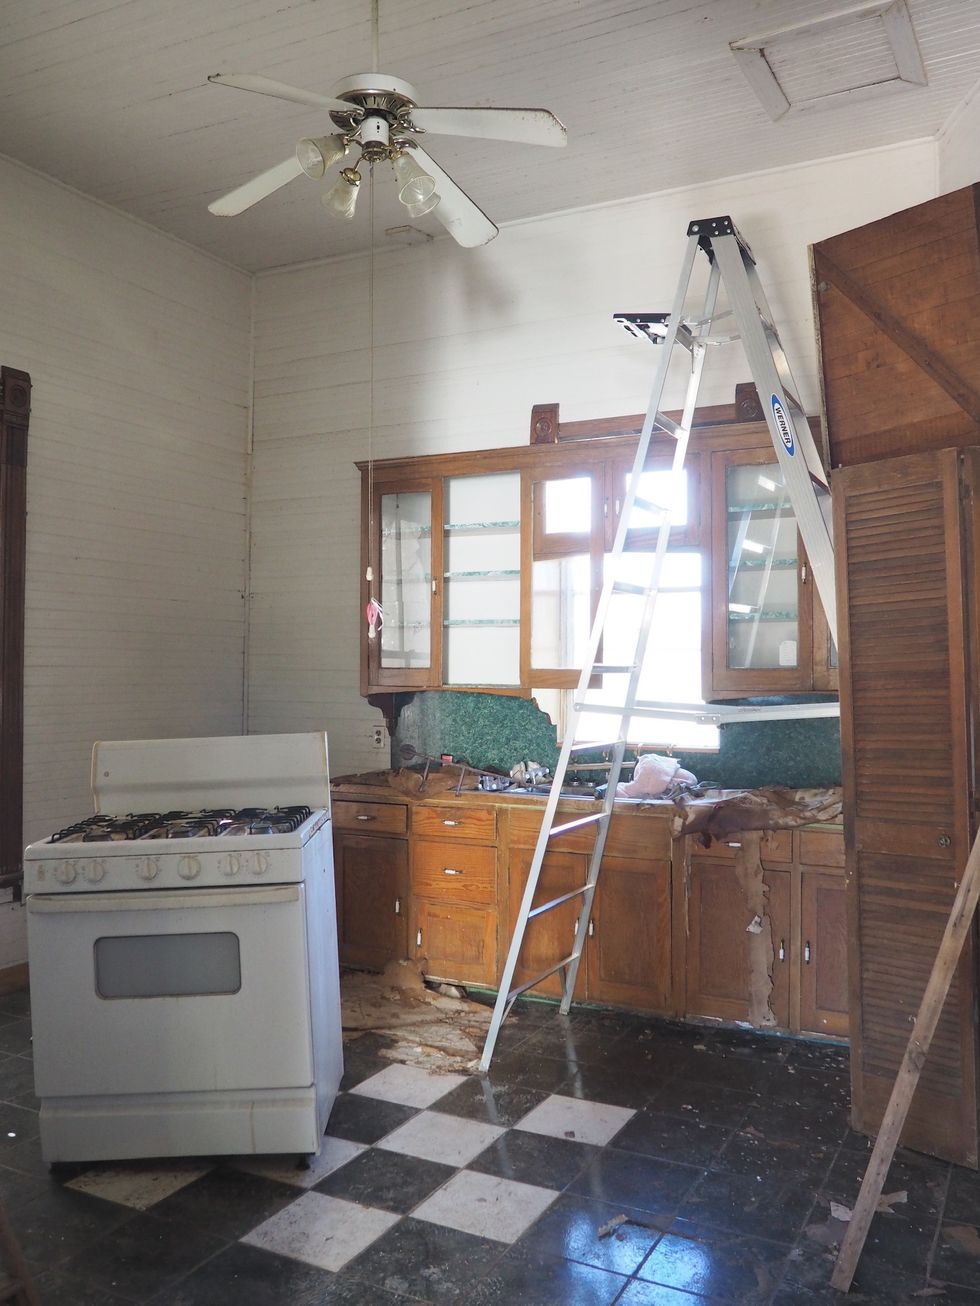 A previously messy kitchen